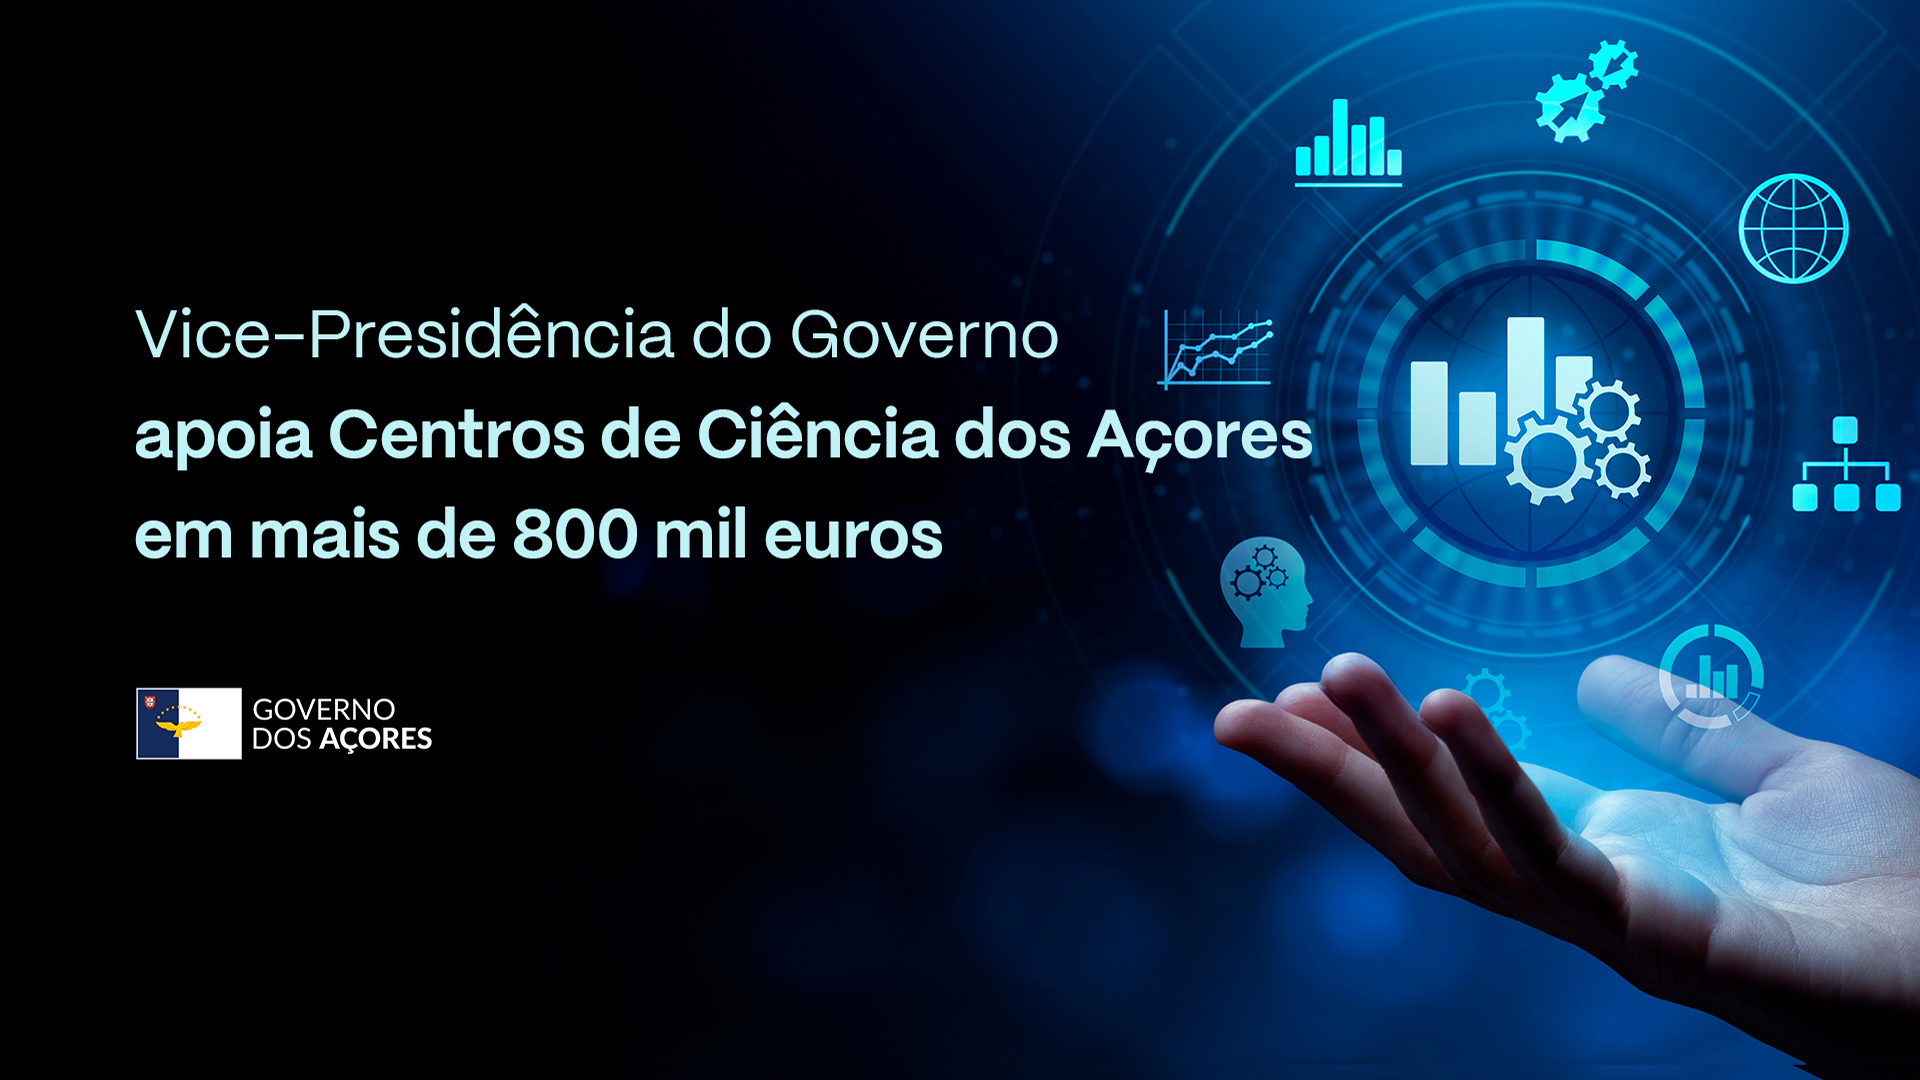 Centros de Ciência dos Açores contam com apoio superior a 800 mil euros da Vice-Presidência do Governo